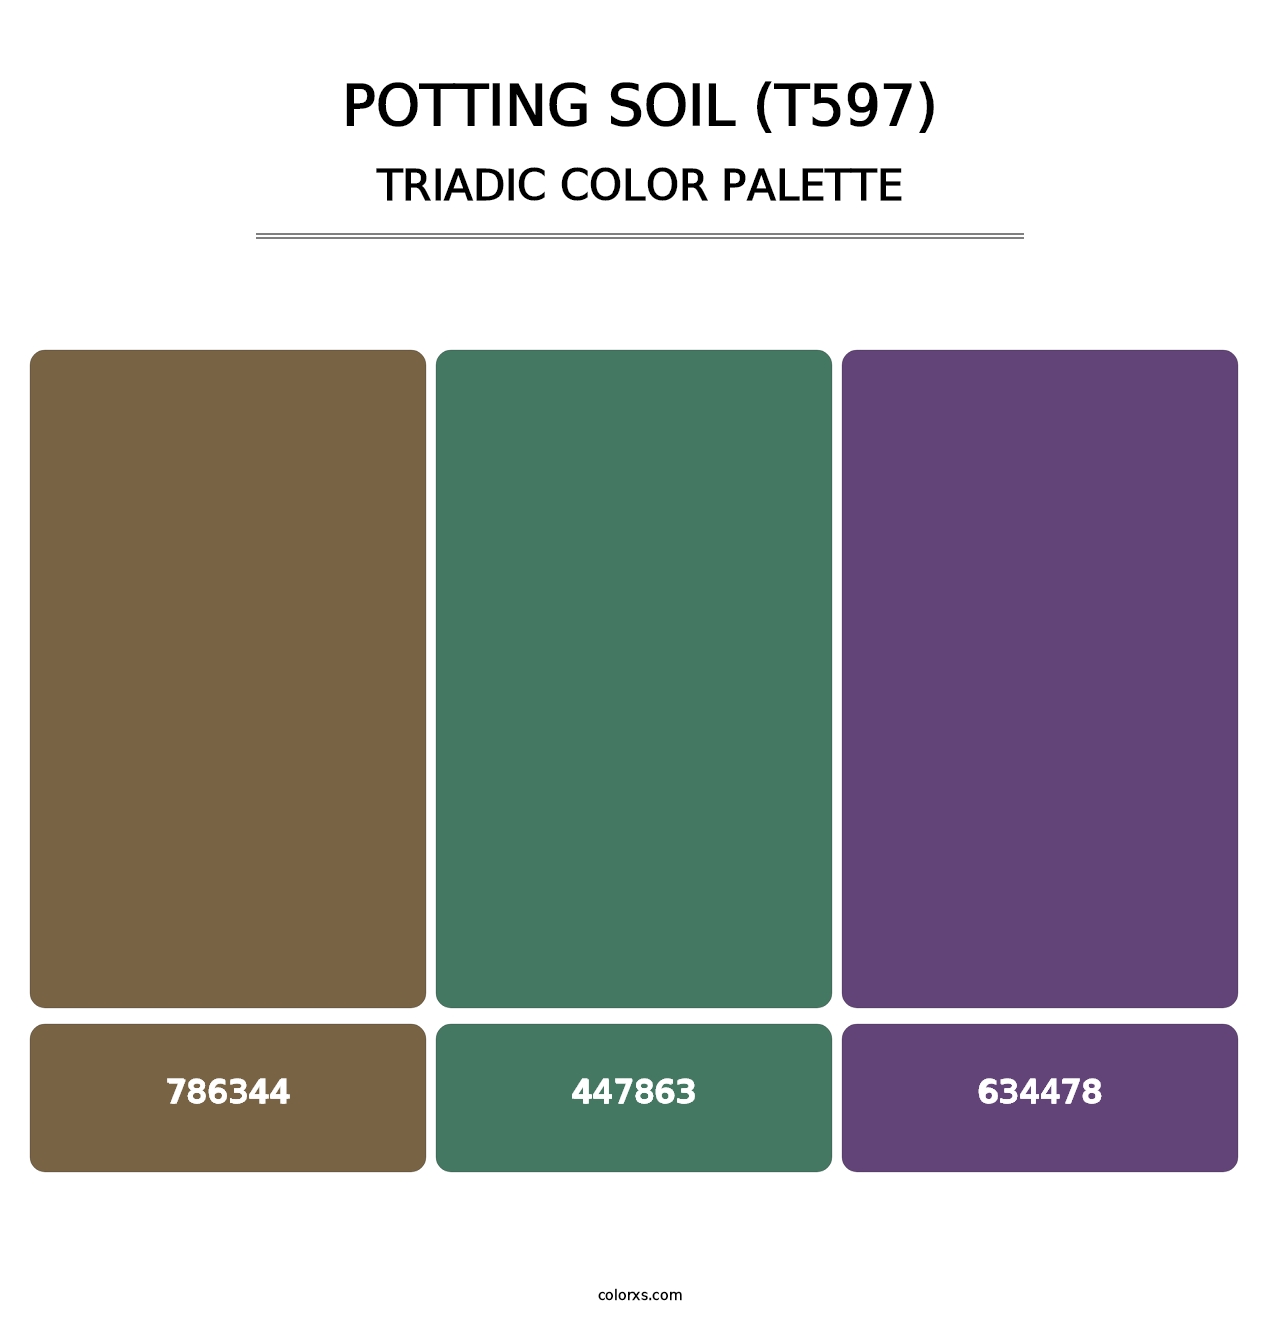 Potting Soil (T597) - Triadic Color Palette